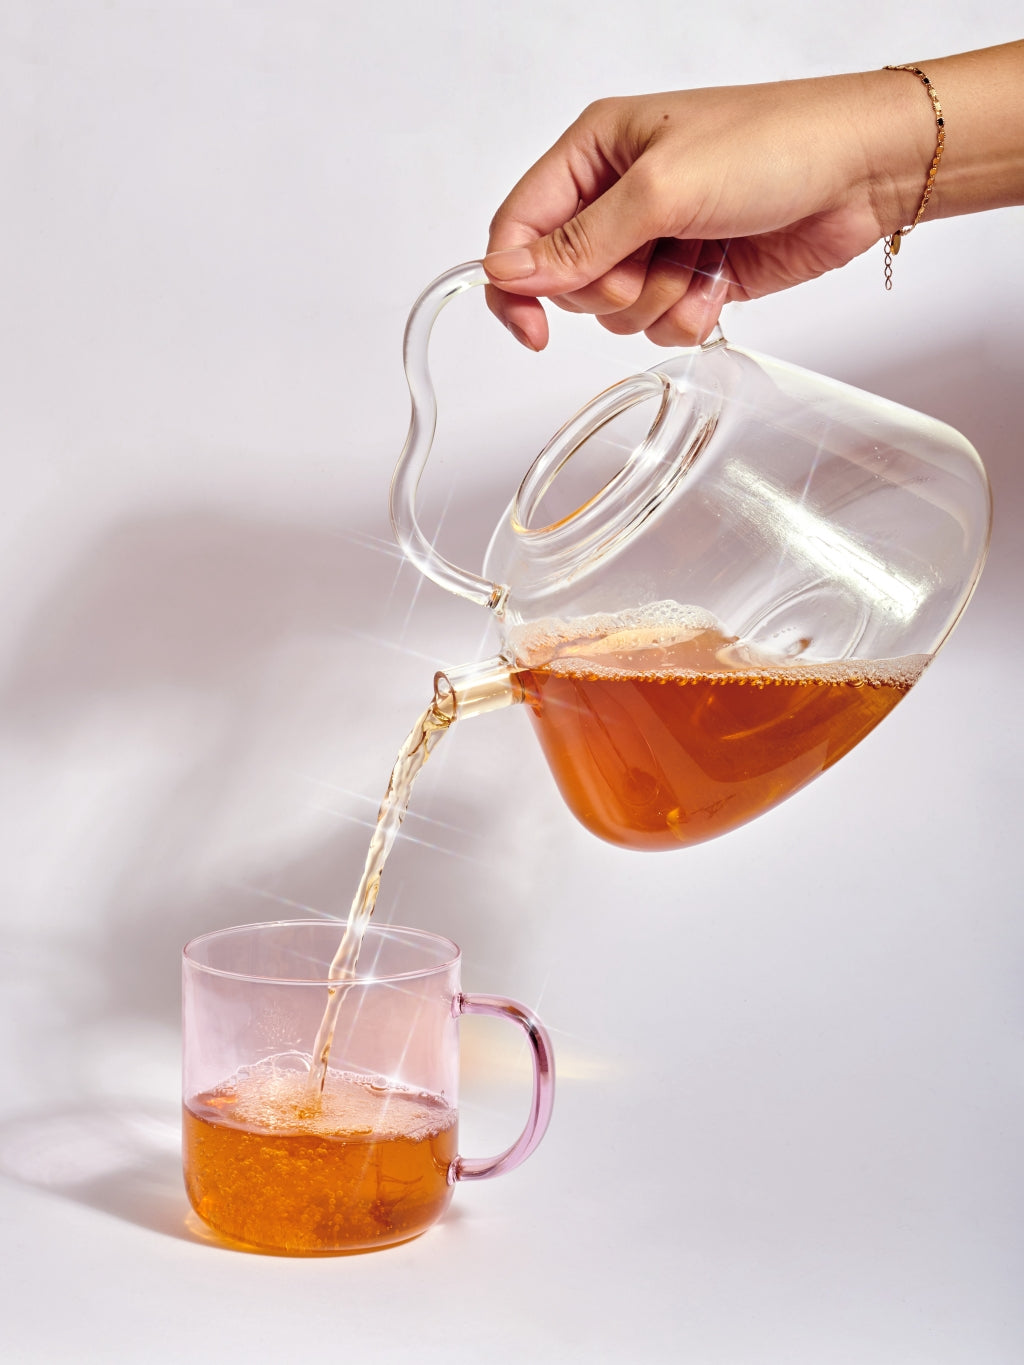 Cosmic Dealer Ayurvedic Herbal Tea - Energy | Inspiration Her